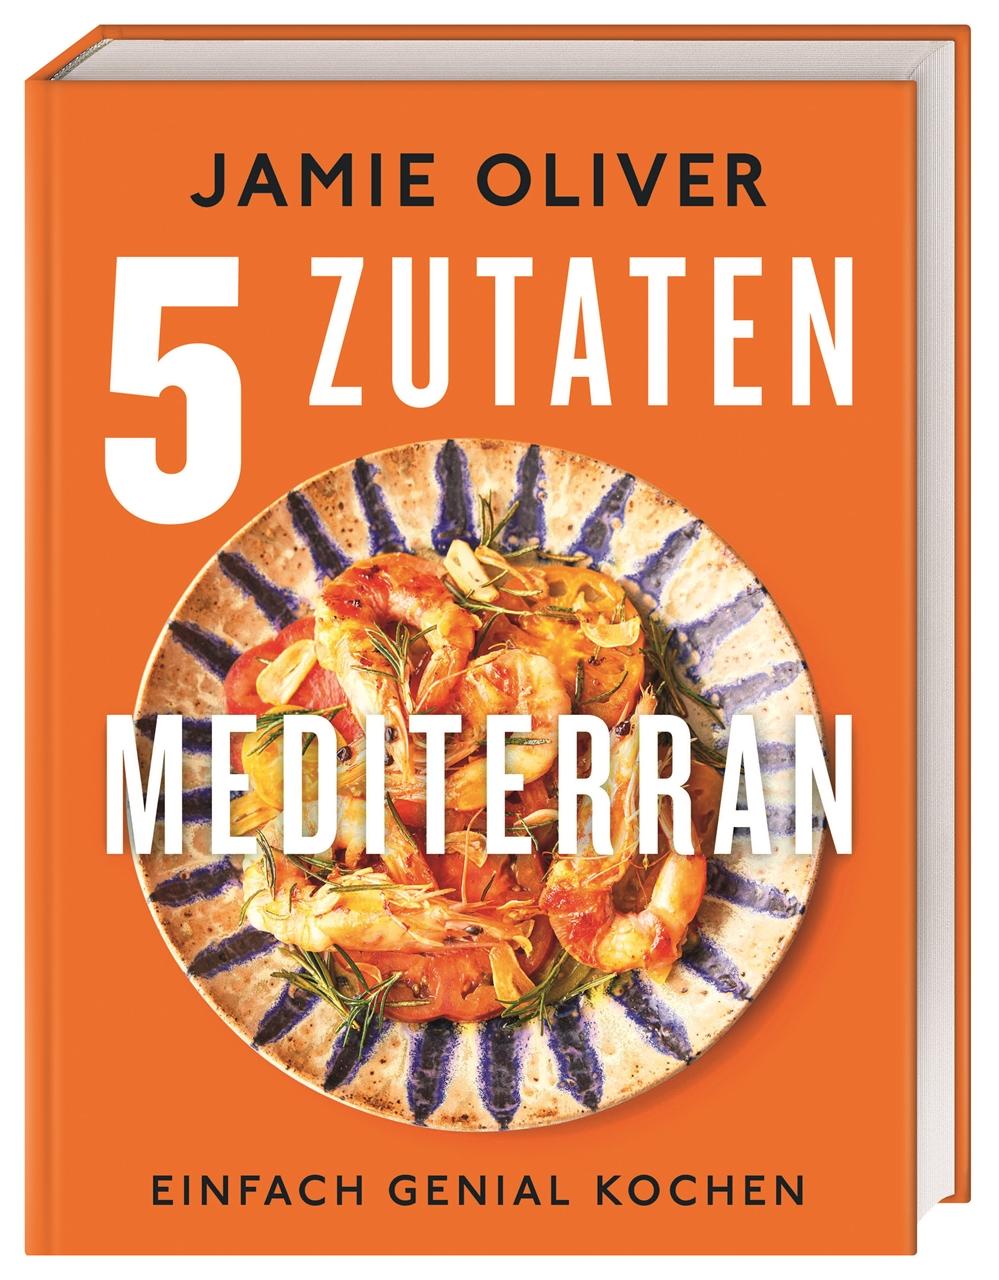 Book Jamie Oliver 5 Zutaten mediterran Helmut Ertl